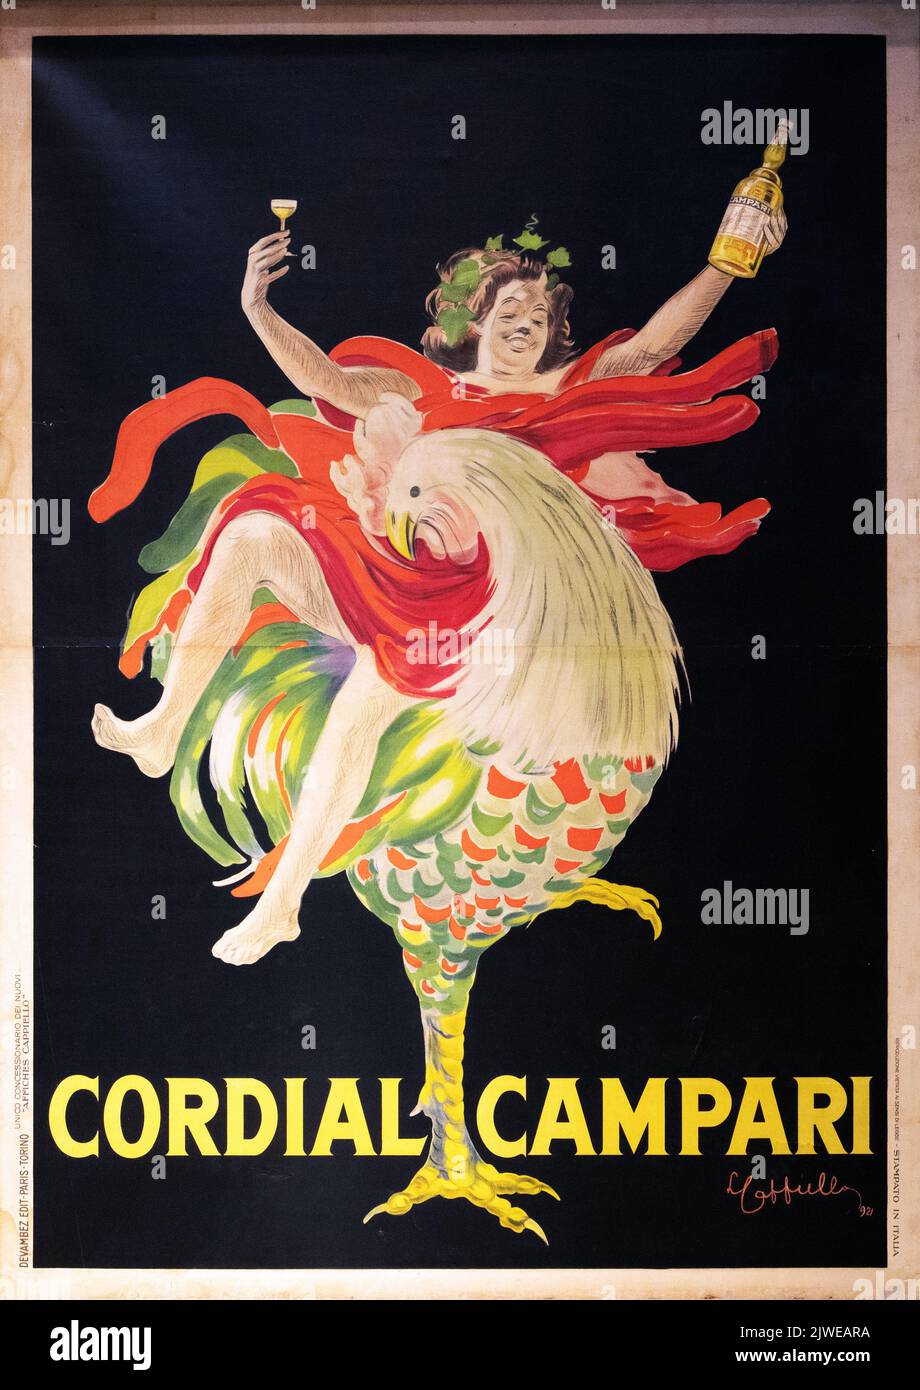 Pubblicità vintage di Codial Campari. Immagine scattata alla Galleria Campari vicino a Milano. Foto Stock